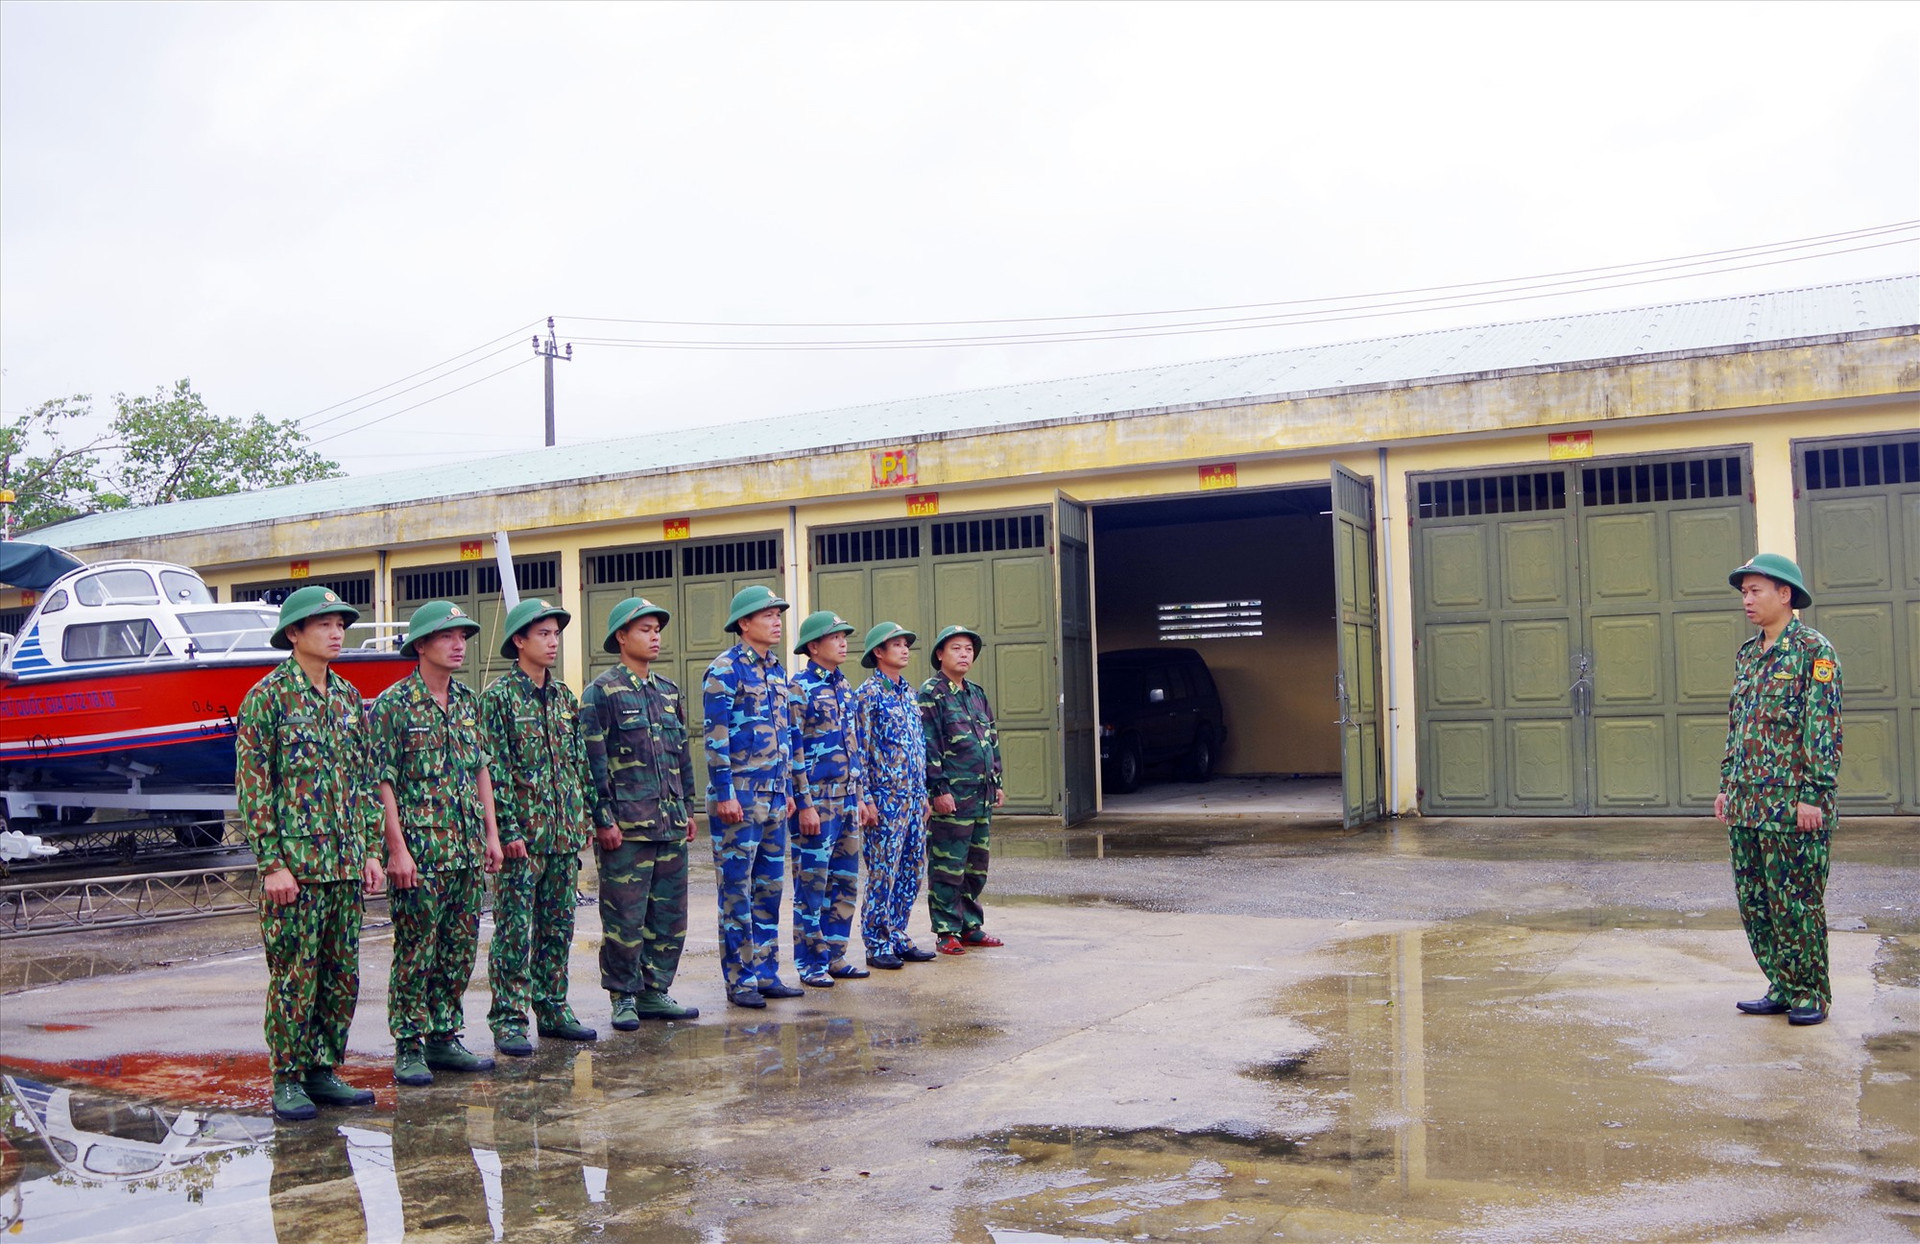 Hình 1: Đại tá Trần Tiến Hiền - Phó Chỉ huy trưởng BĐBP tỉnh động viên, giao nhiệm vụ cho đội tìm kiếm cứu nạn.Ảnh: HỒNG ANH